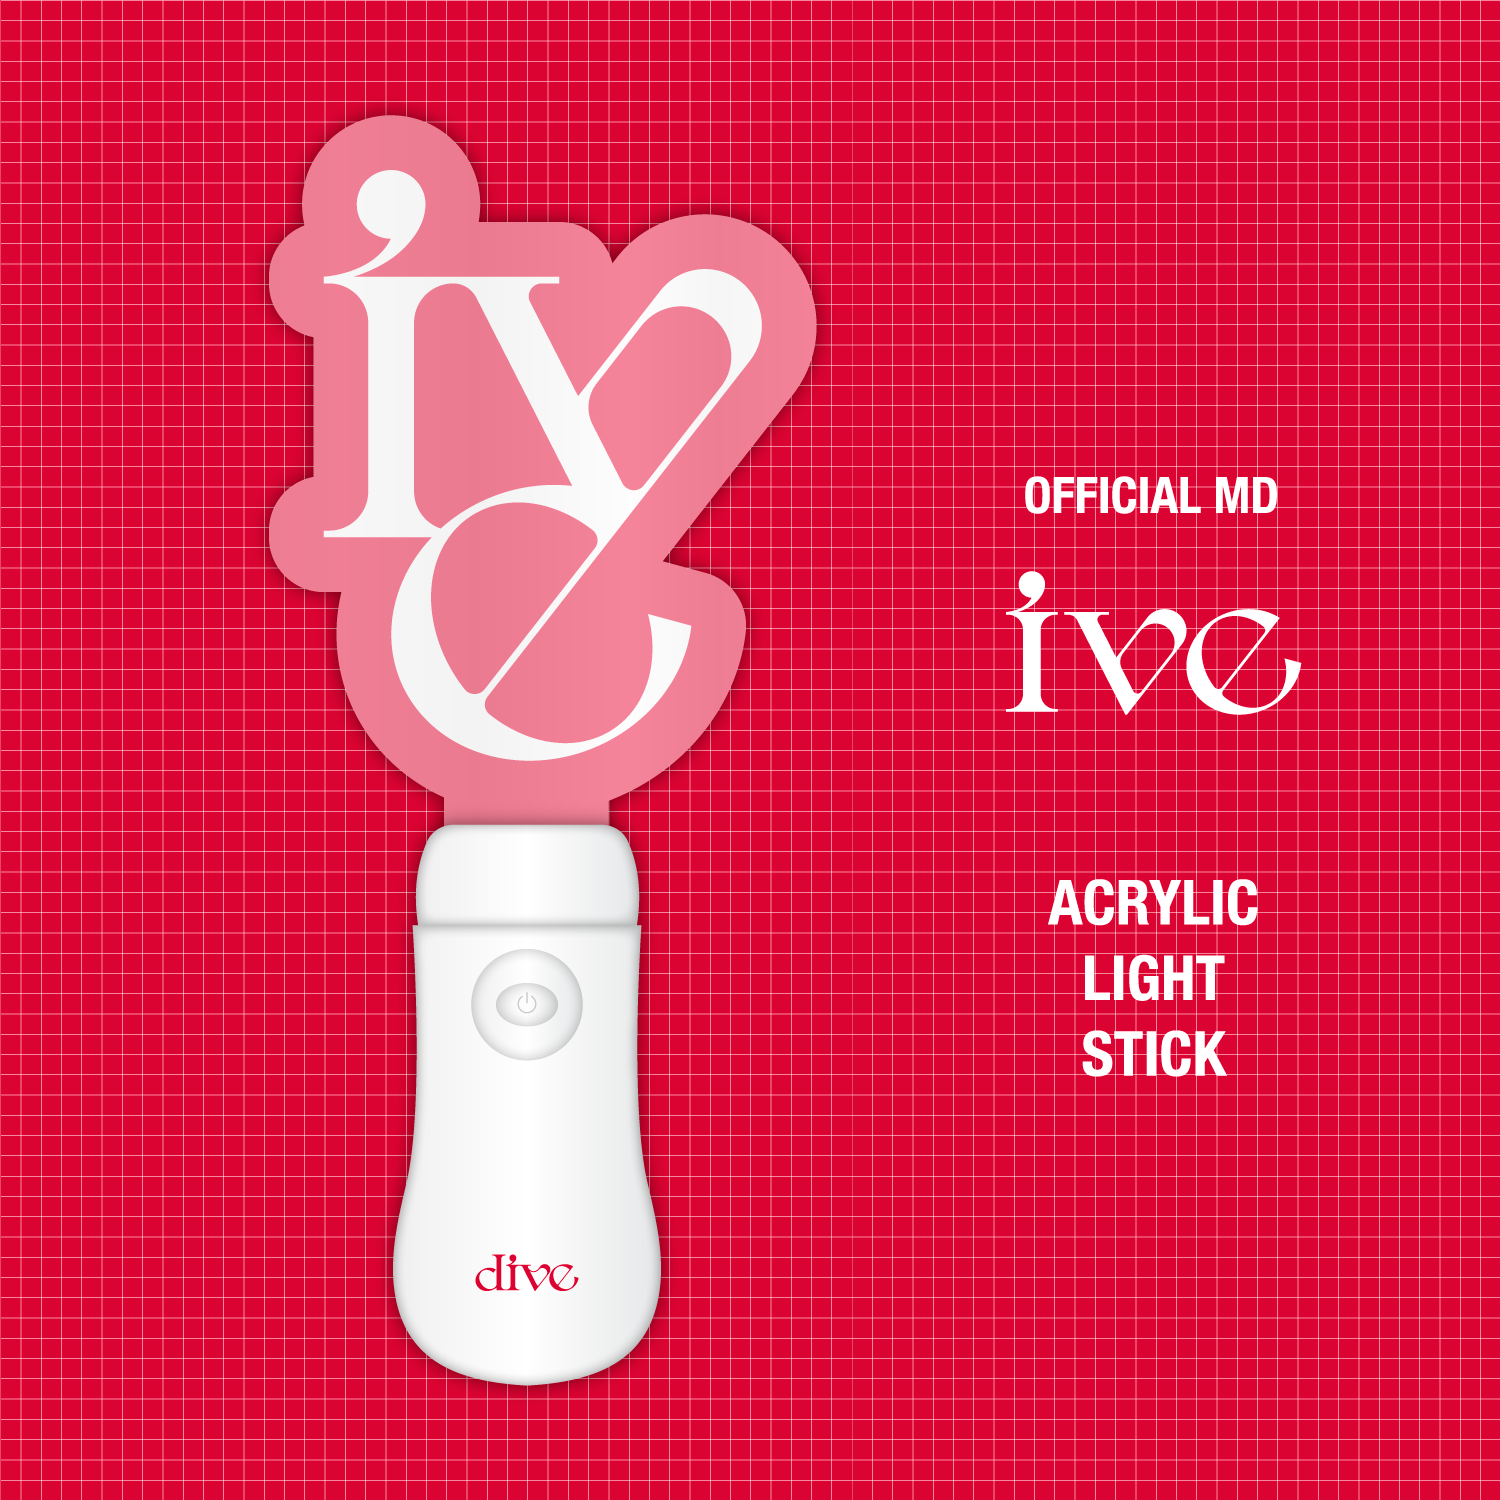 아이브(IVE) Official MD - 공식 아크릴 응원봉 ACRYLIC LIGHT STICK